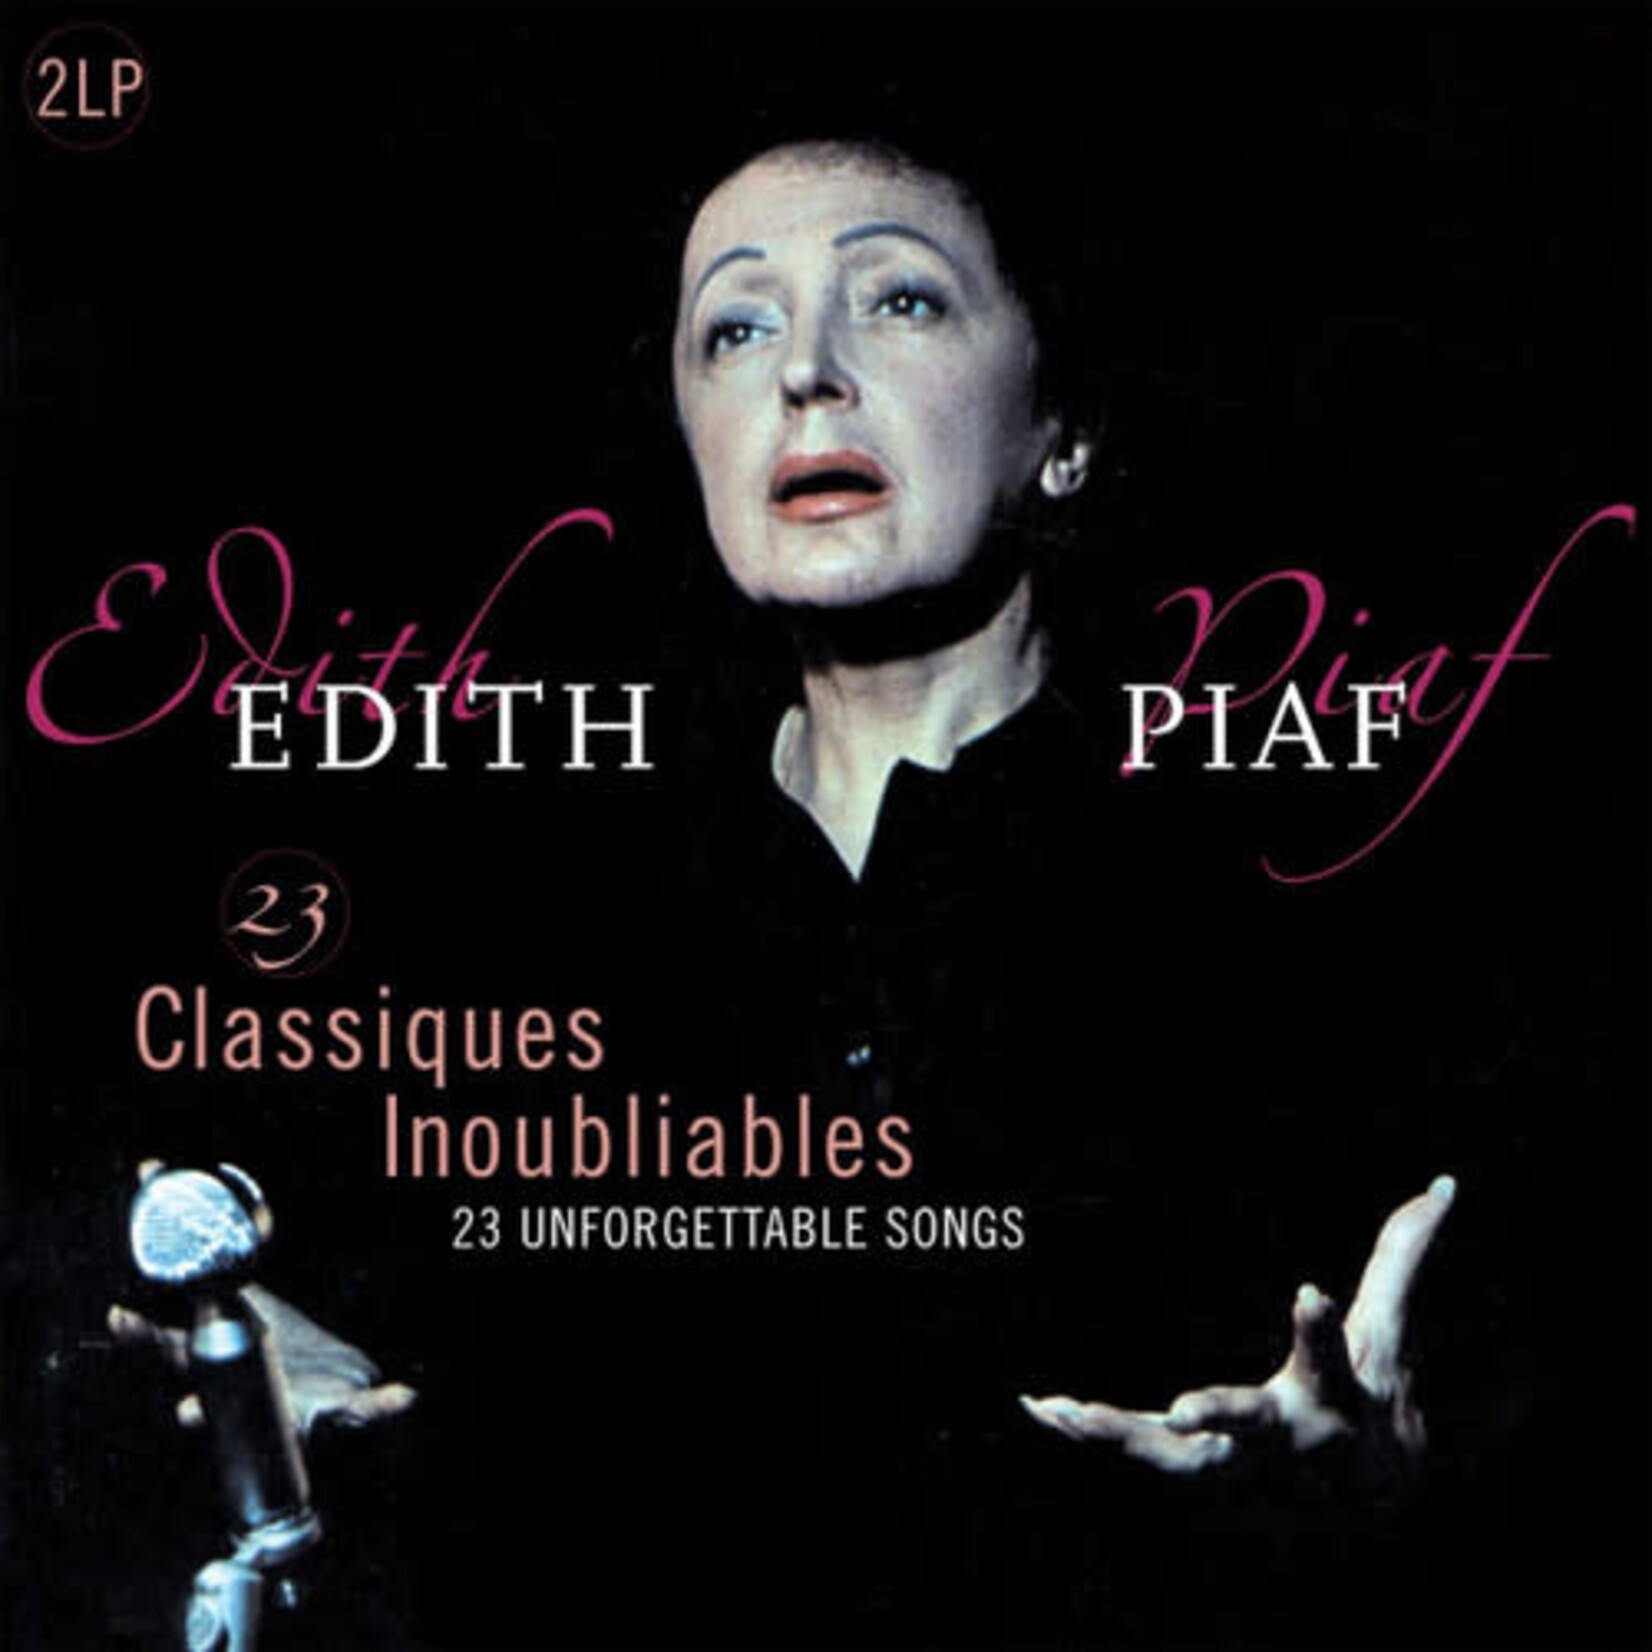 [New] Edith Piaf - 23 Classiques Inoubliables (2LP, 180g, pink vinyl)